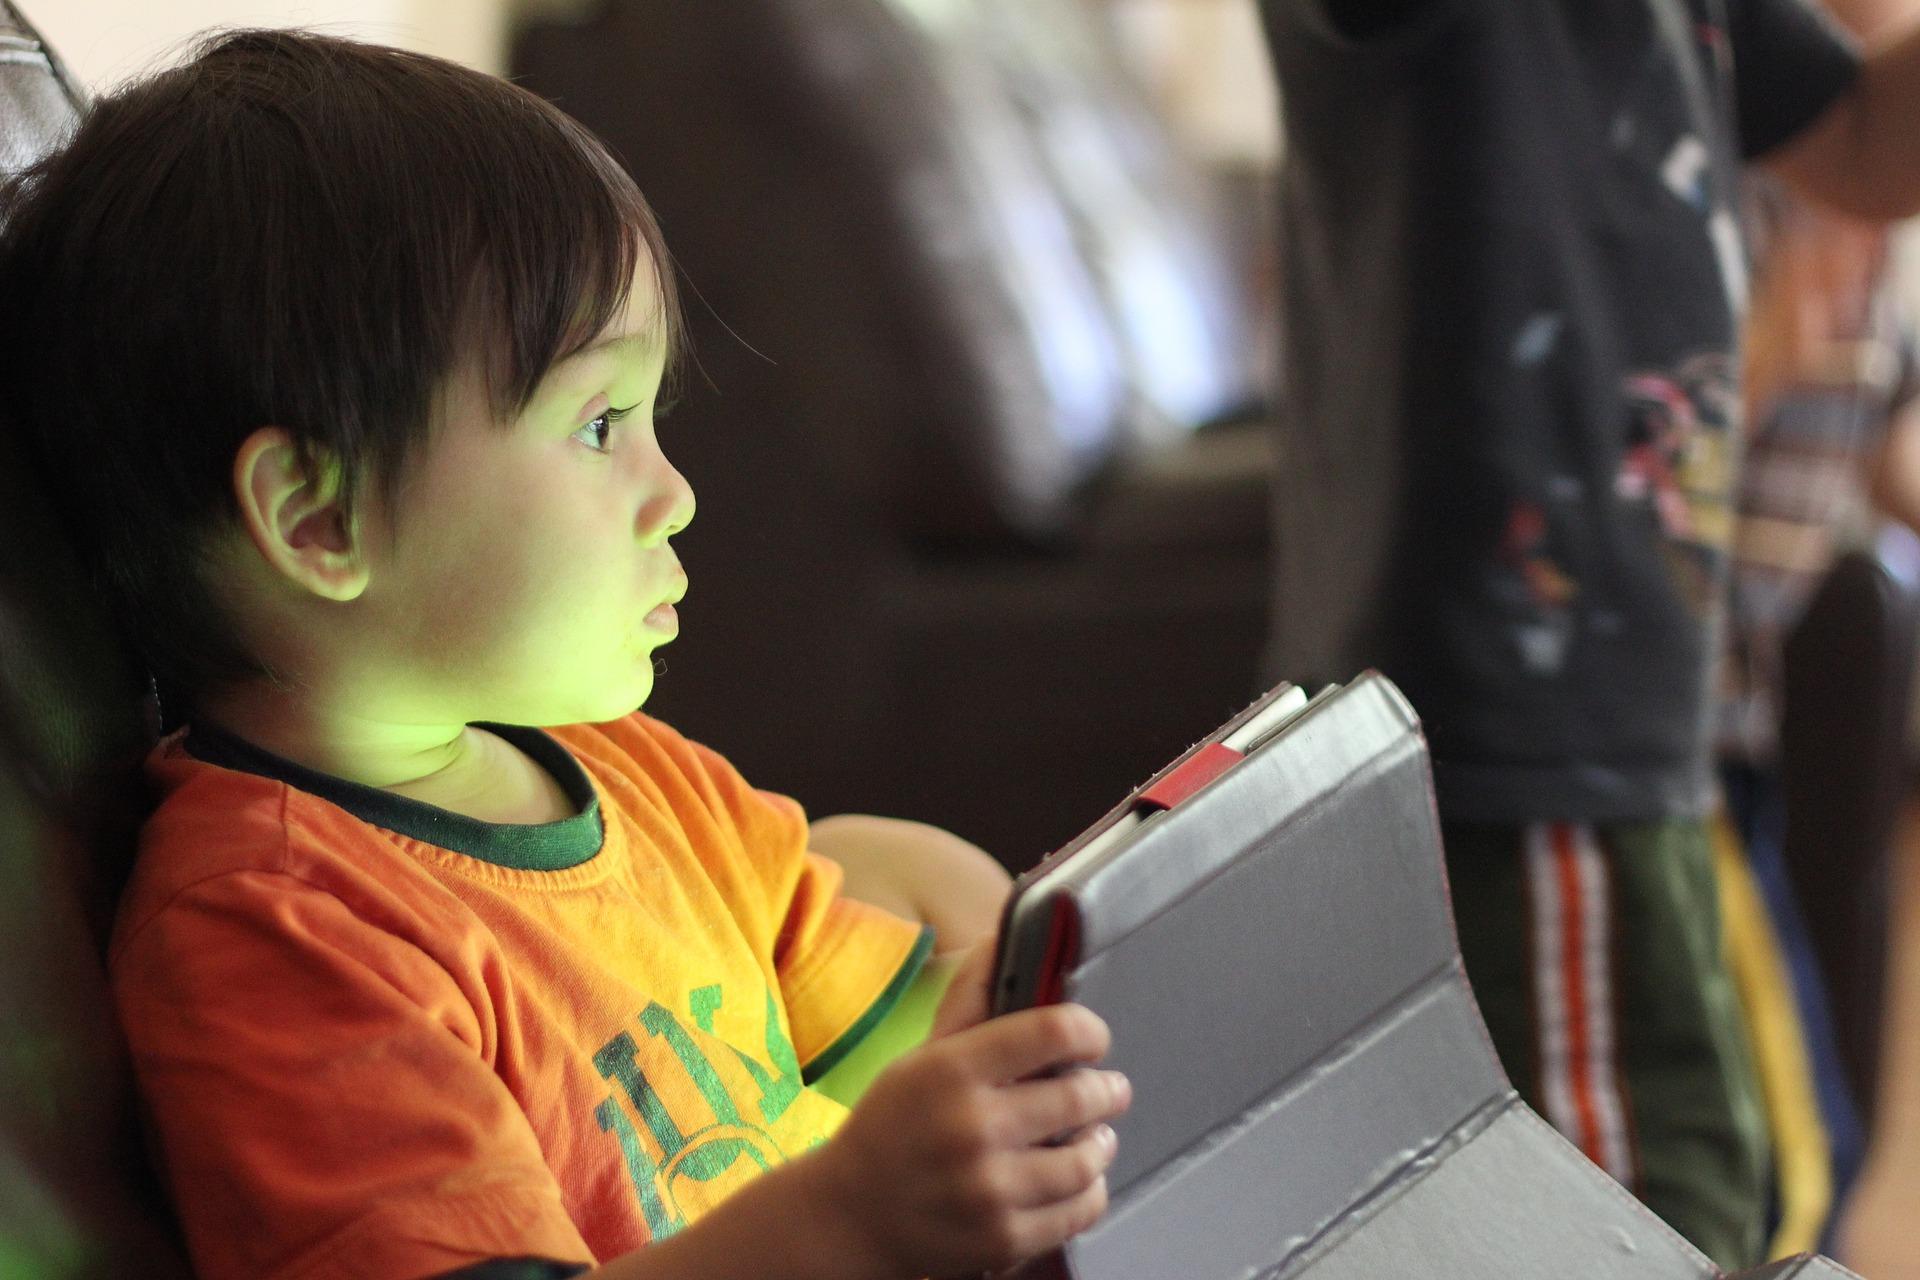 Kinder wachsen heute in einer digitalen Welt auf. Dafür sollten sie die entsprechende Medienkompetenz haben. Foto: Thomas Quinn/Pixabay